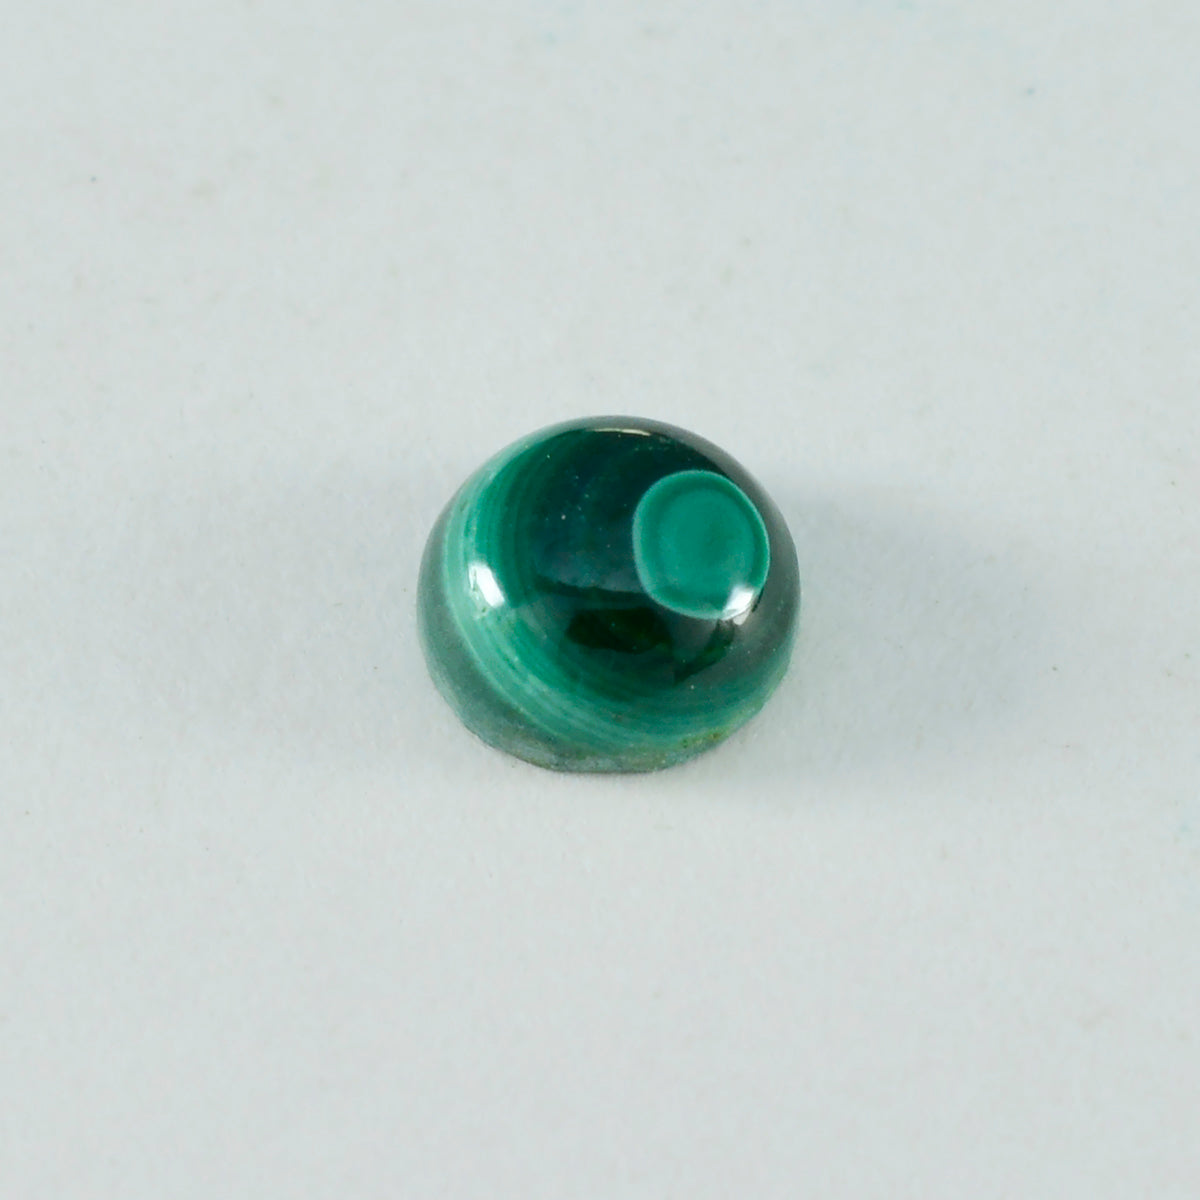 riyogems 1 pieza cabujón de malaquita verde 11x11 mm forma redonda gemas de gran calidad